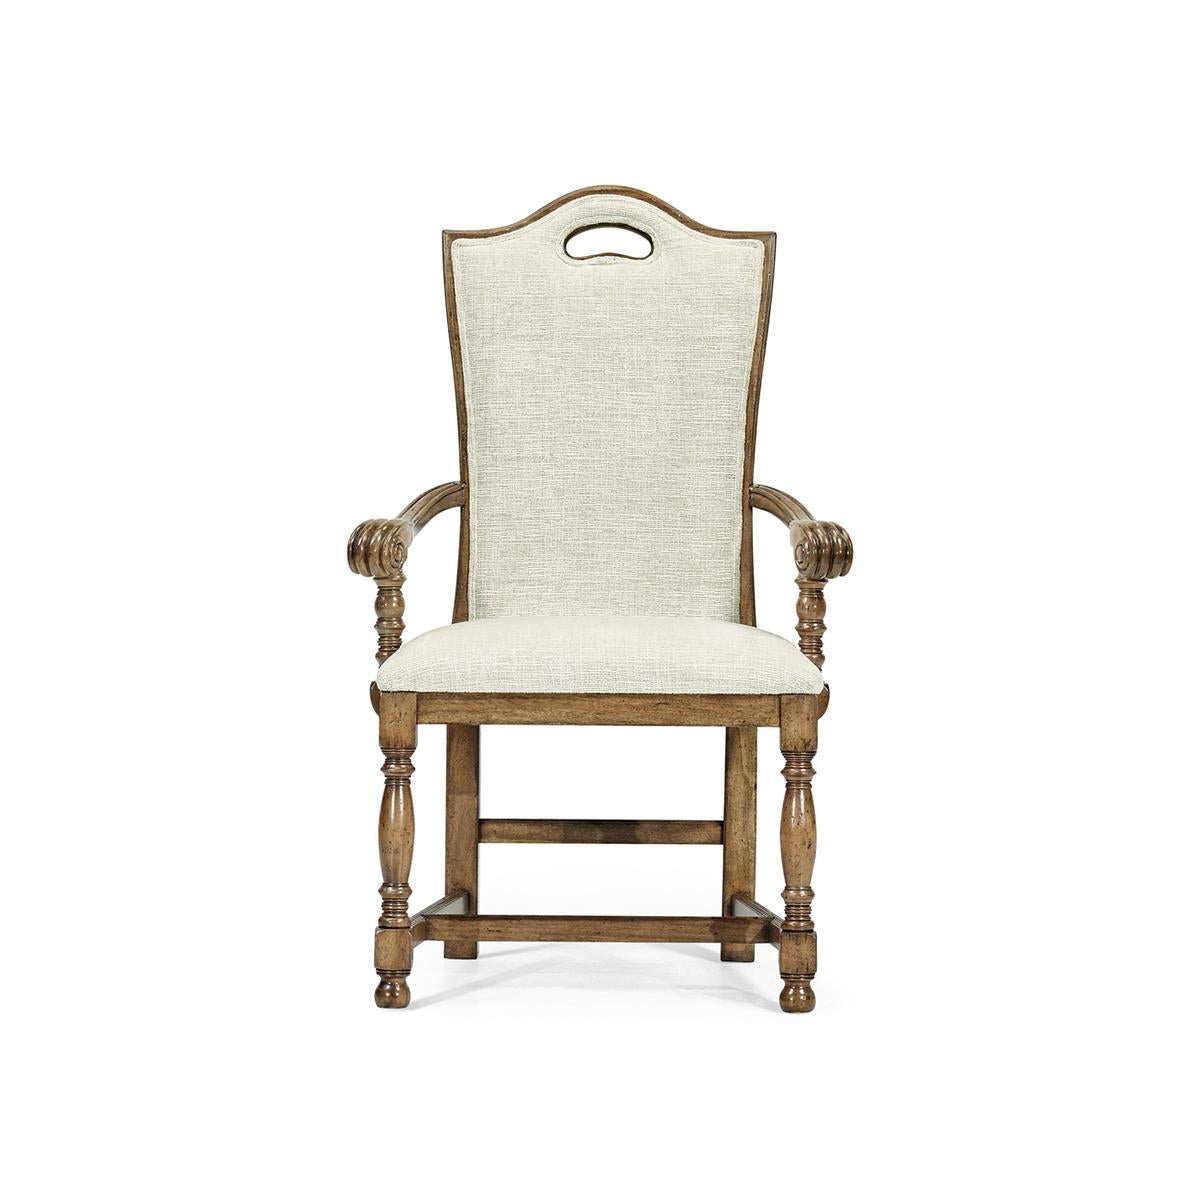 Der William and Mary High Back Armchair ist ein eleganter und komfortabler Stuhl mit mittelhohem Driftwood-Finish, hoher Rückenlehne und Plüschpolsterung. Er verfügt über eine schön geschwungene obere Schiene mit einem durchbrochenen Griff und eine